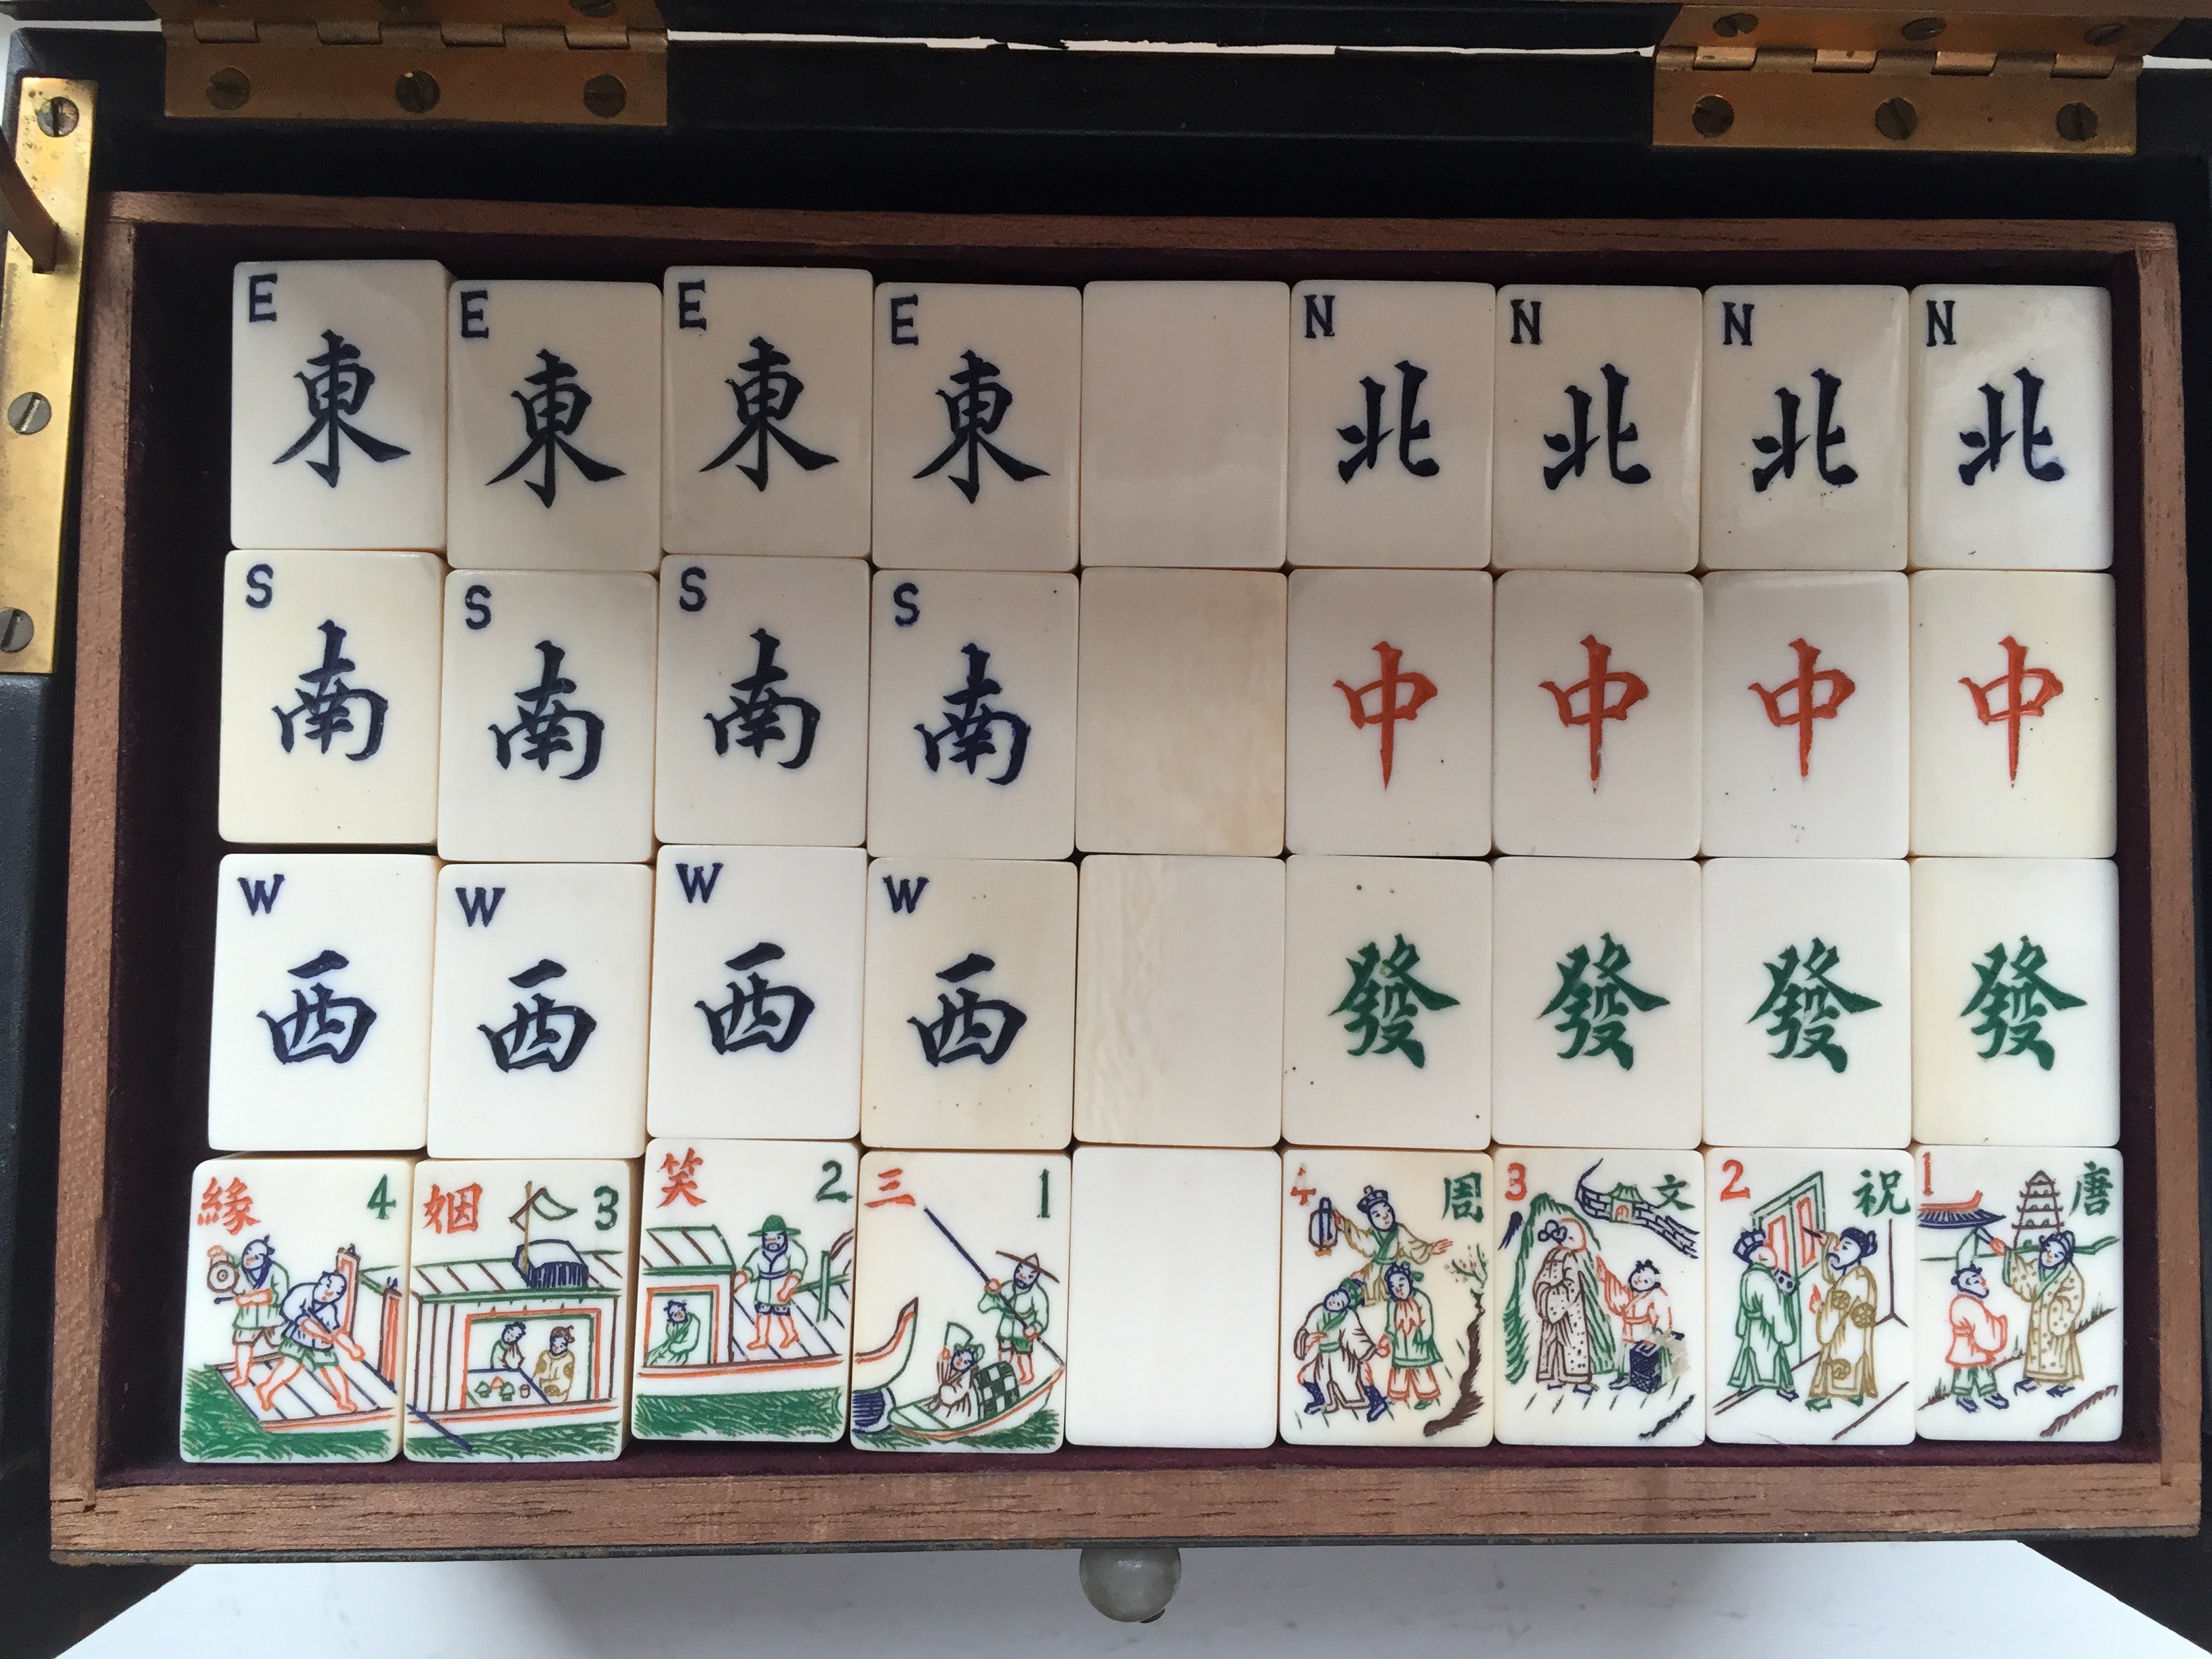 ivory mahjong set